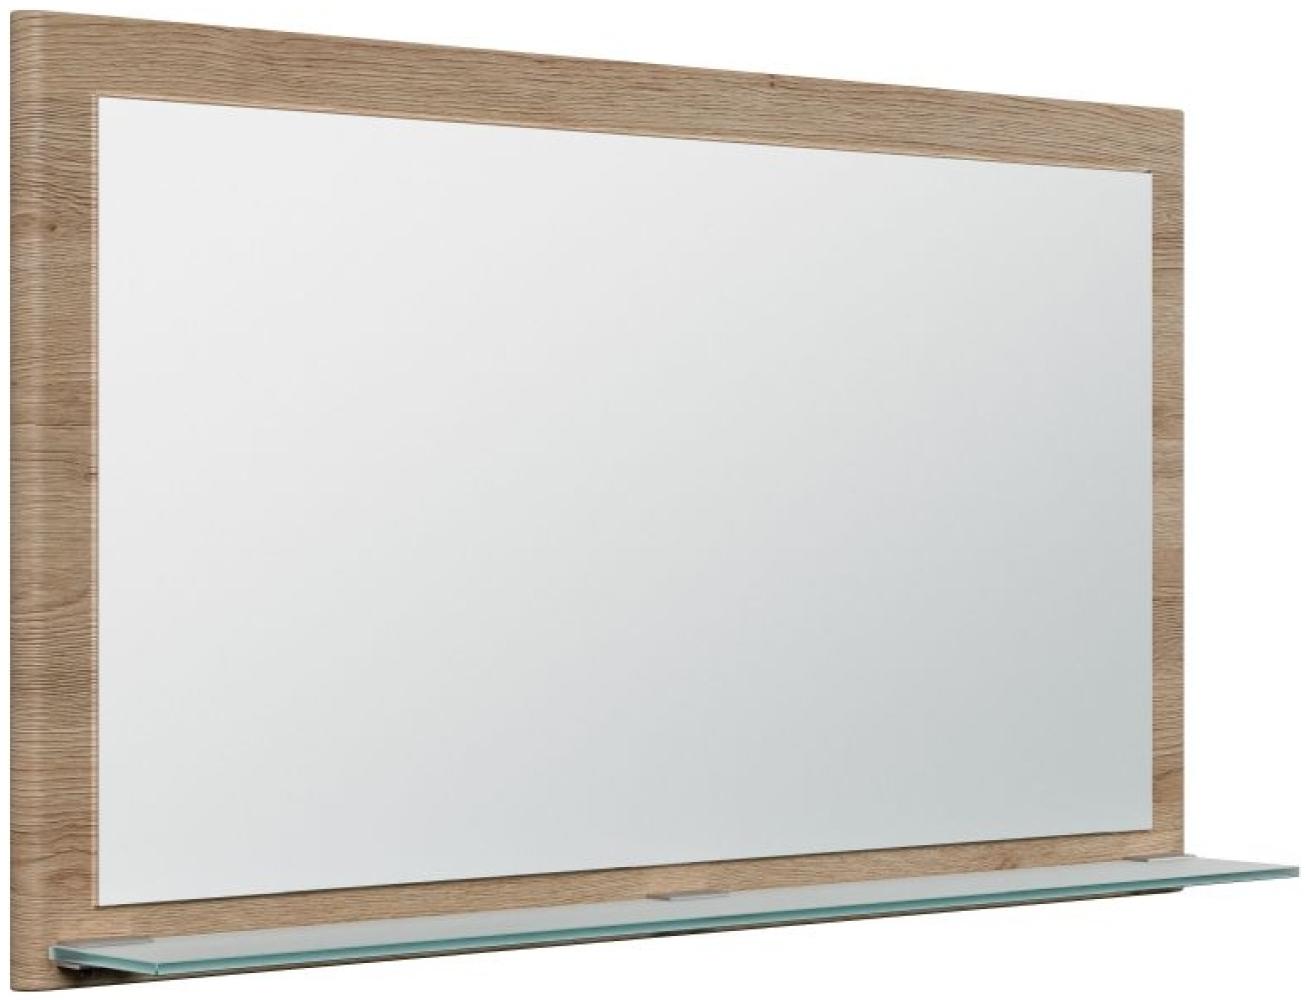 Posseik Spiegel Elite mit Glasablage 104 x 60 cm Eiche hell Bild 1